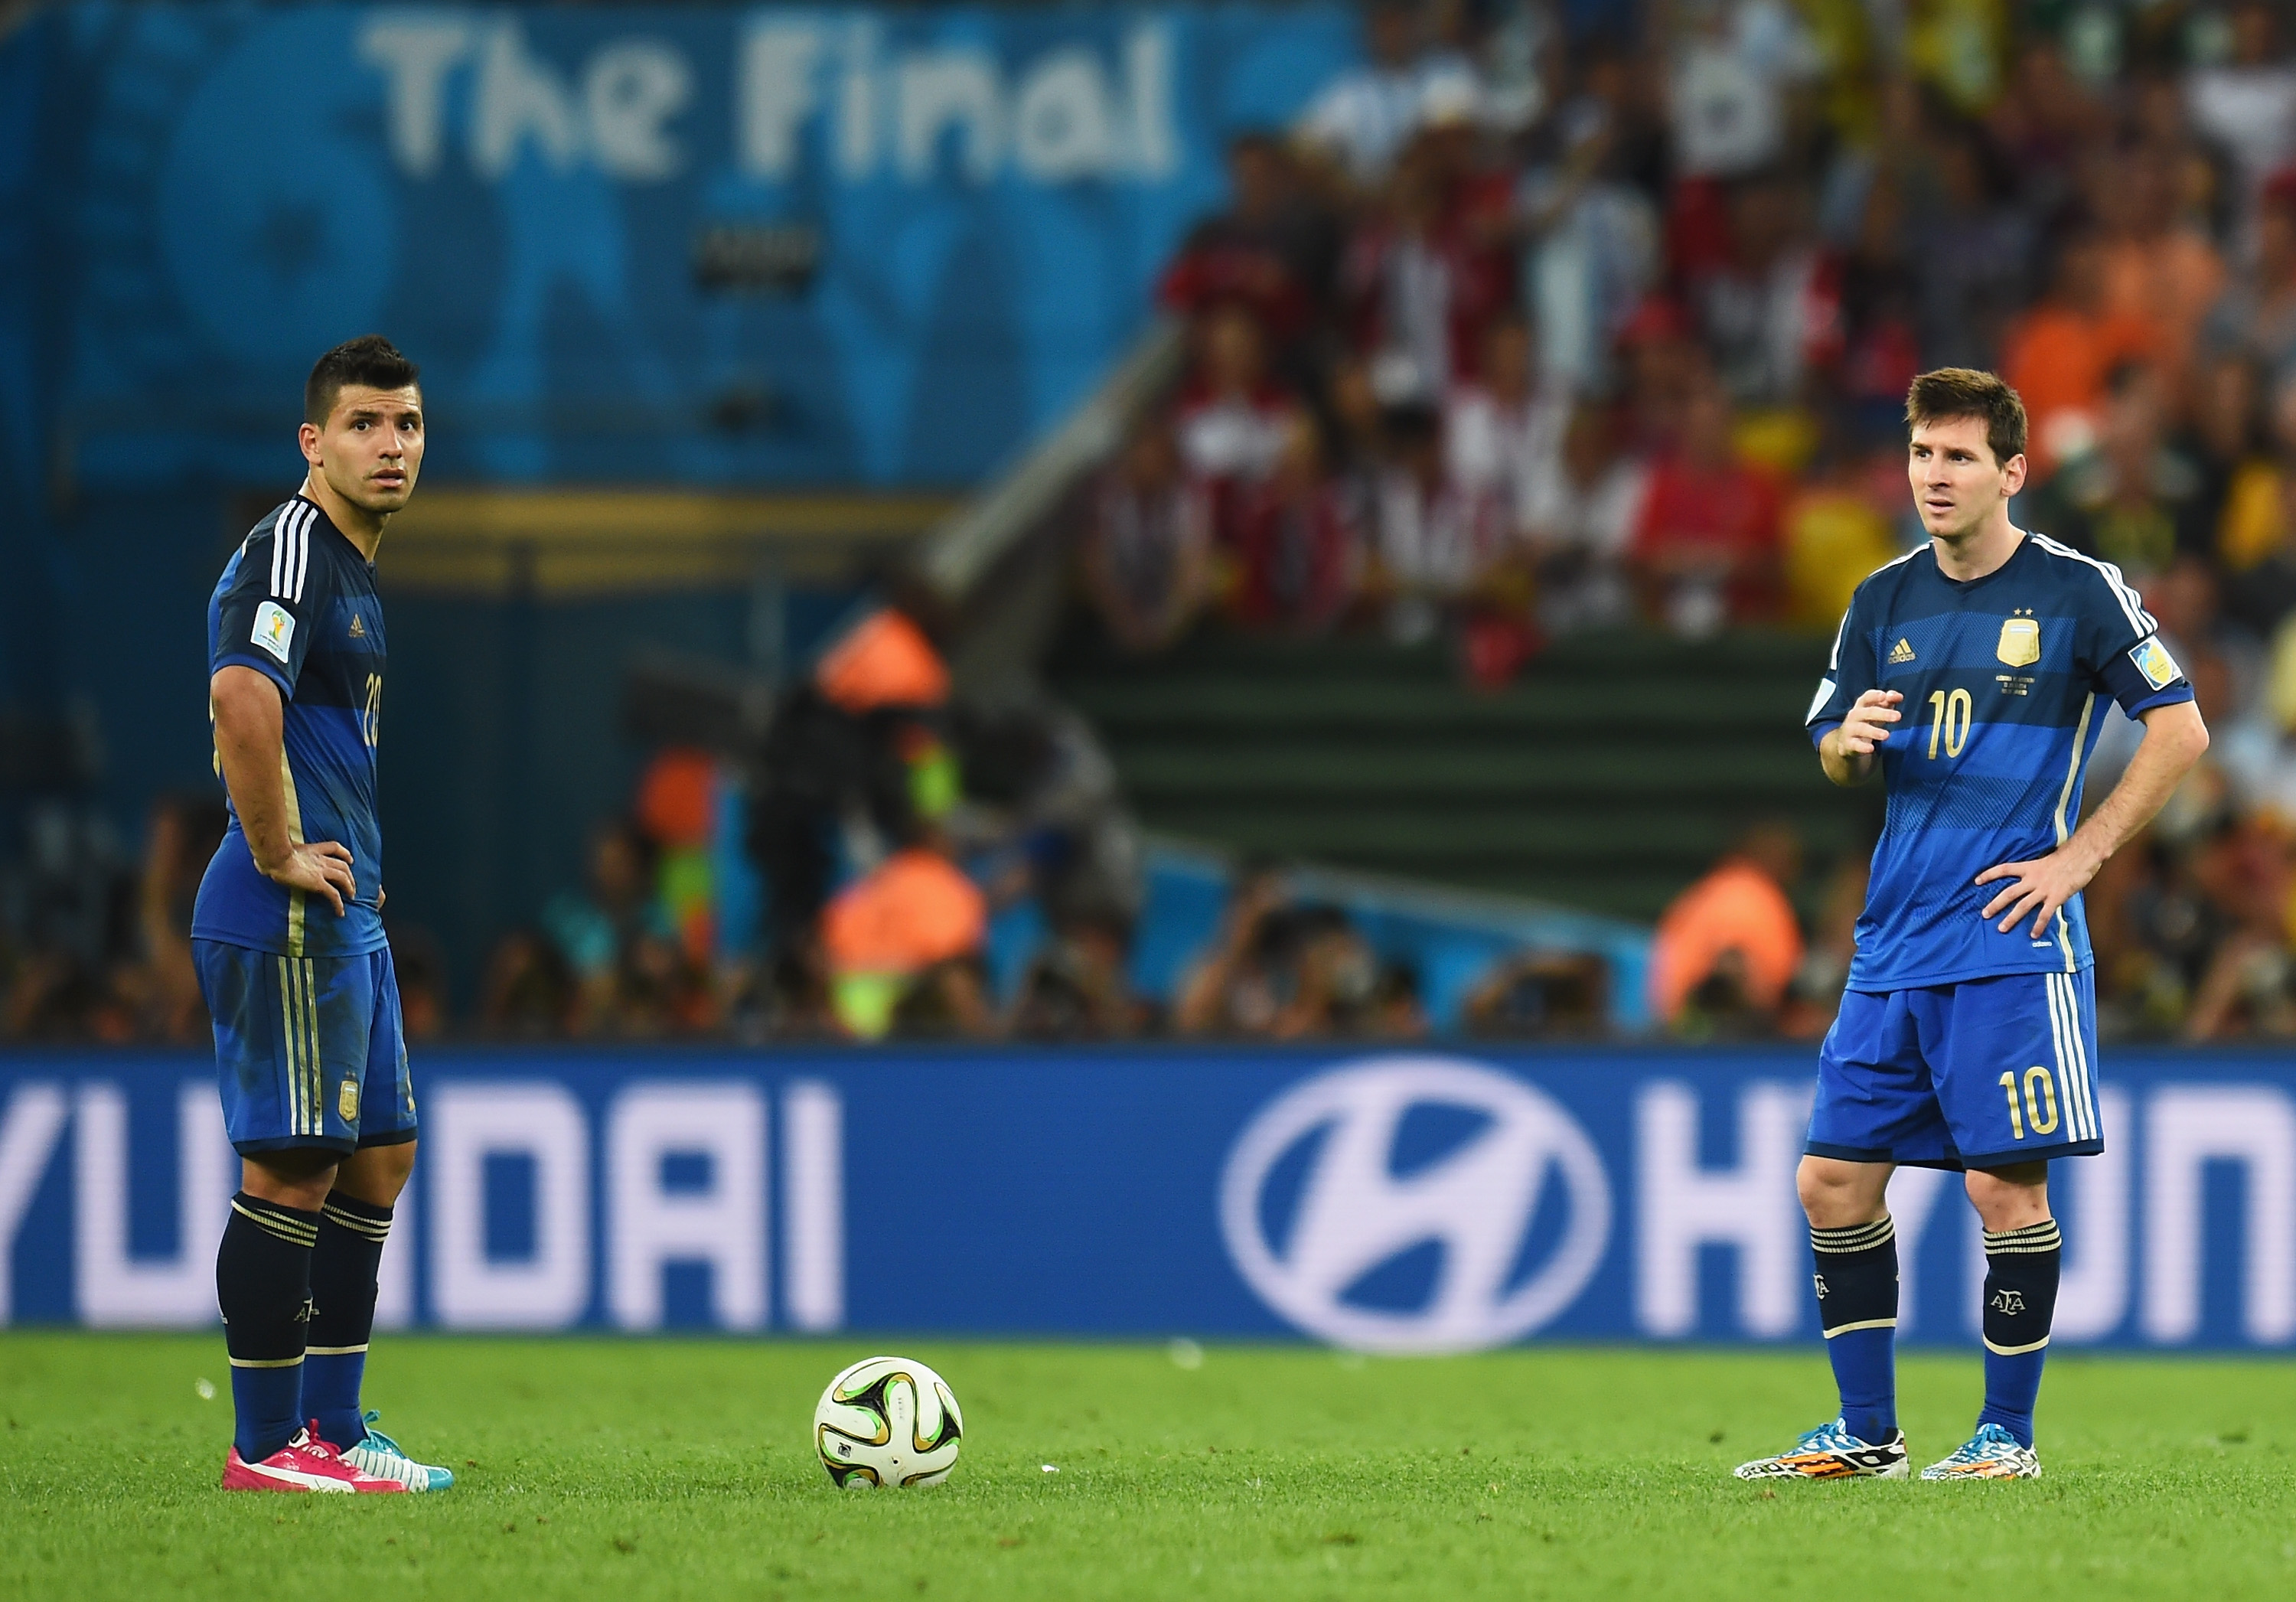 Ergio Aguero (L) e Lionel Messi dell'Argentina reagiscono dopo aver subito il primo gol della Germania durante la partita finale della Coppa del Mondo FIFA 2014 in Brasile tra Germania e Argentina a Maracana il 13 luglio 2014 a Rio de Janeiro, Brasile.